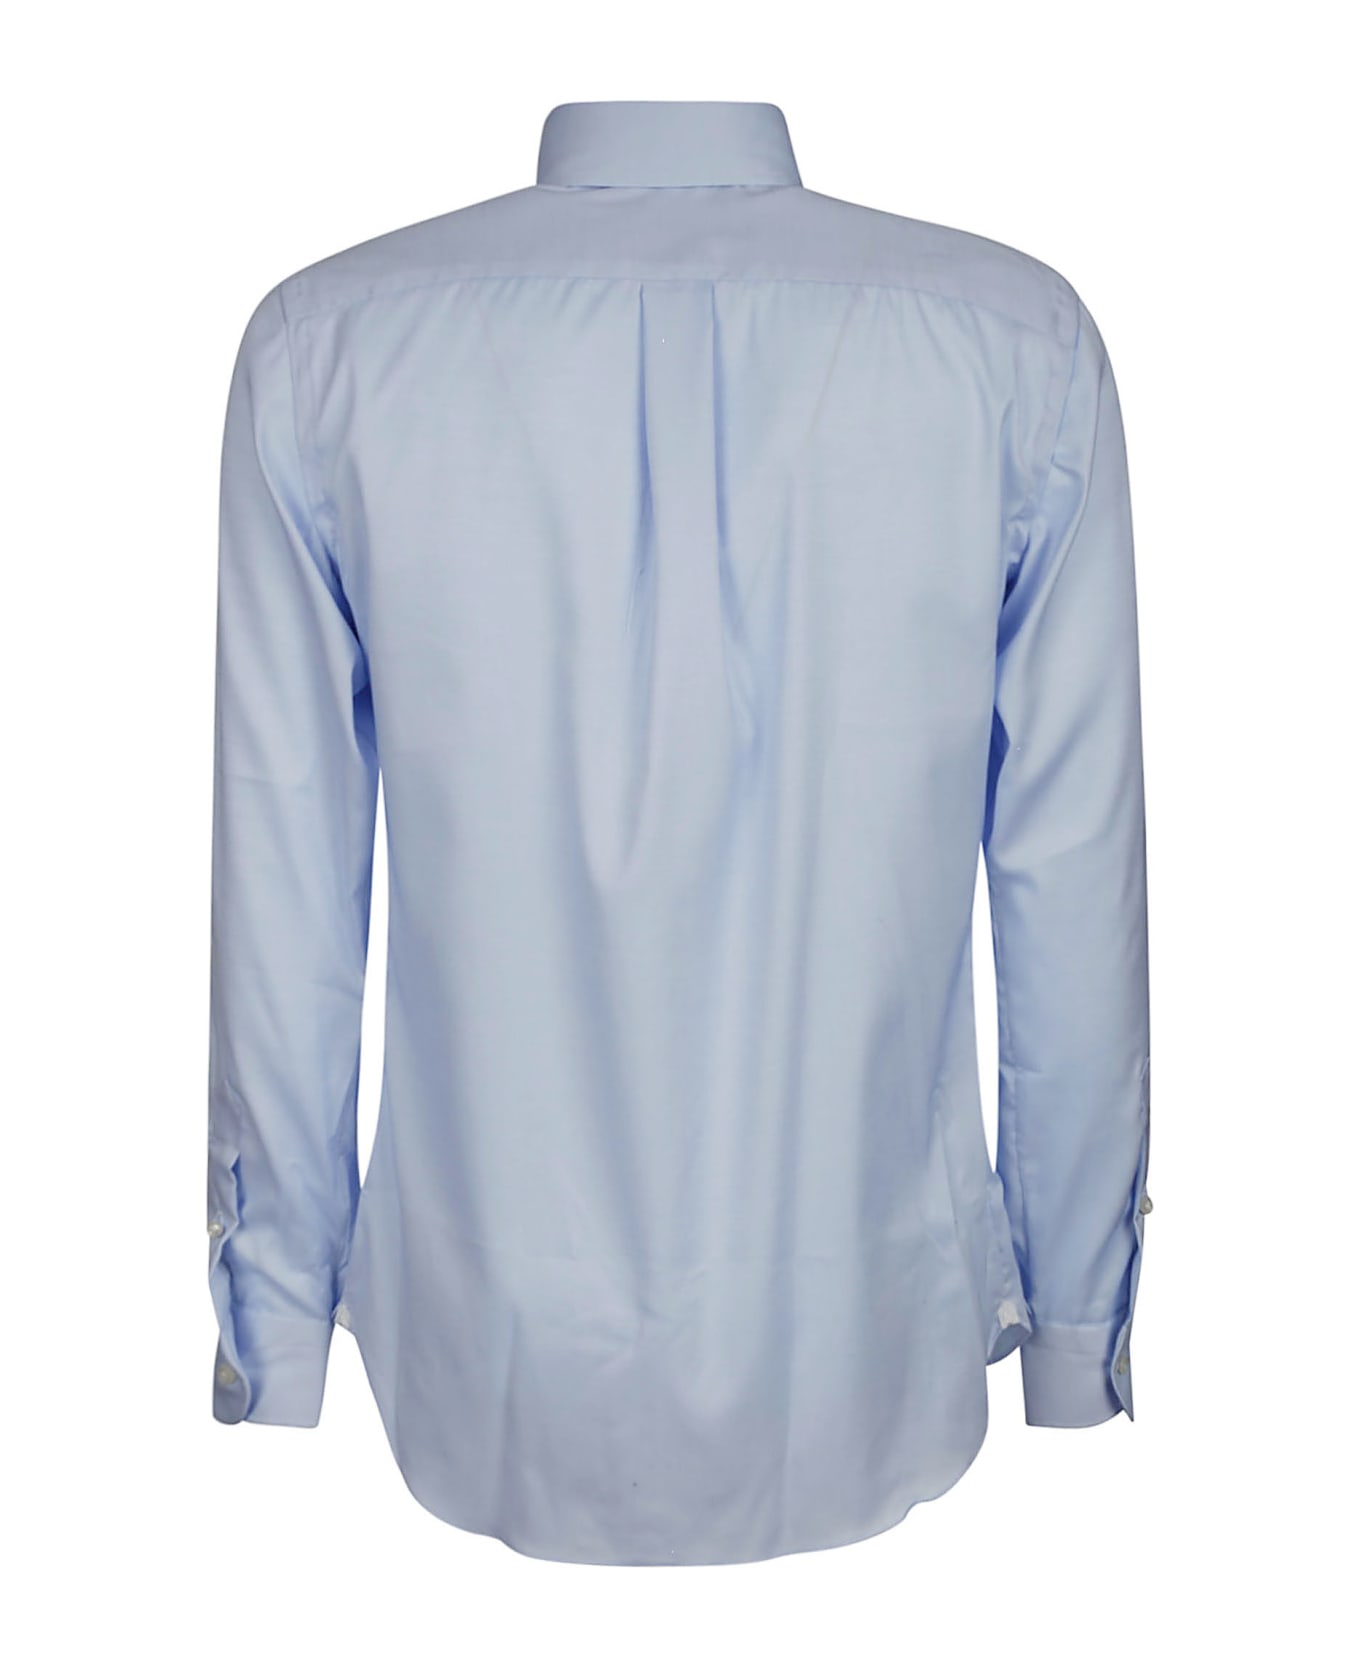 Borriello Napoli Shirt Botton Down - Blue